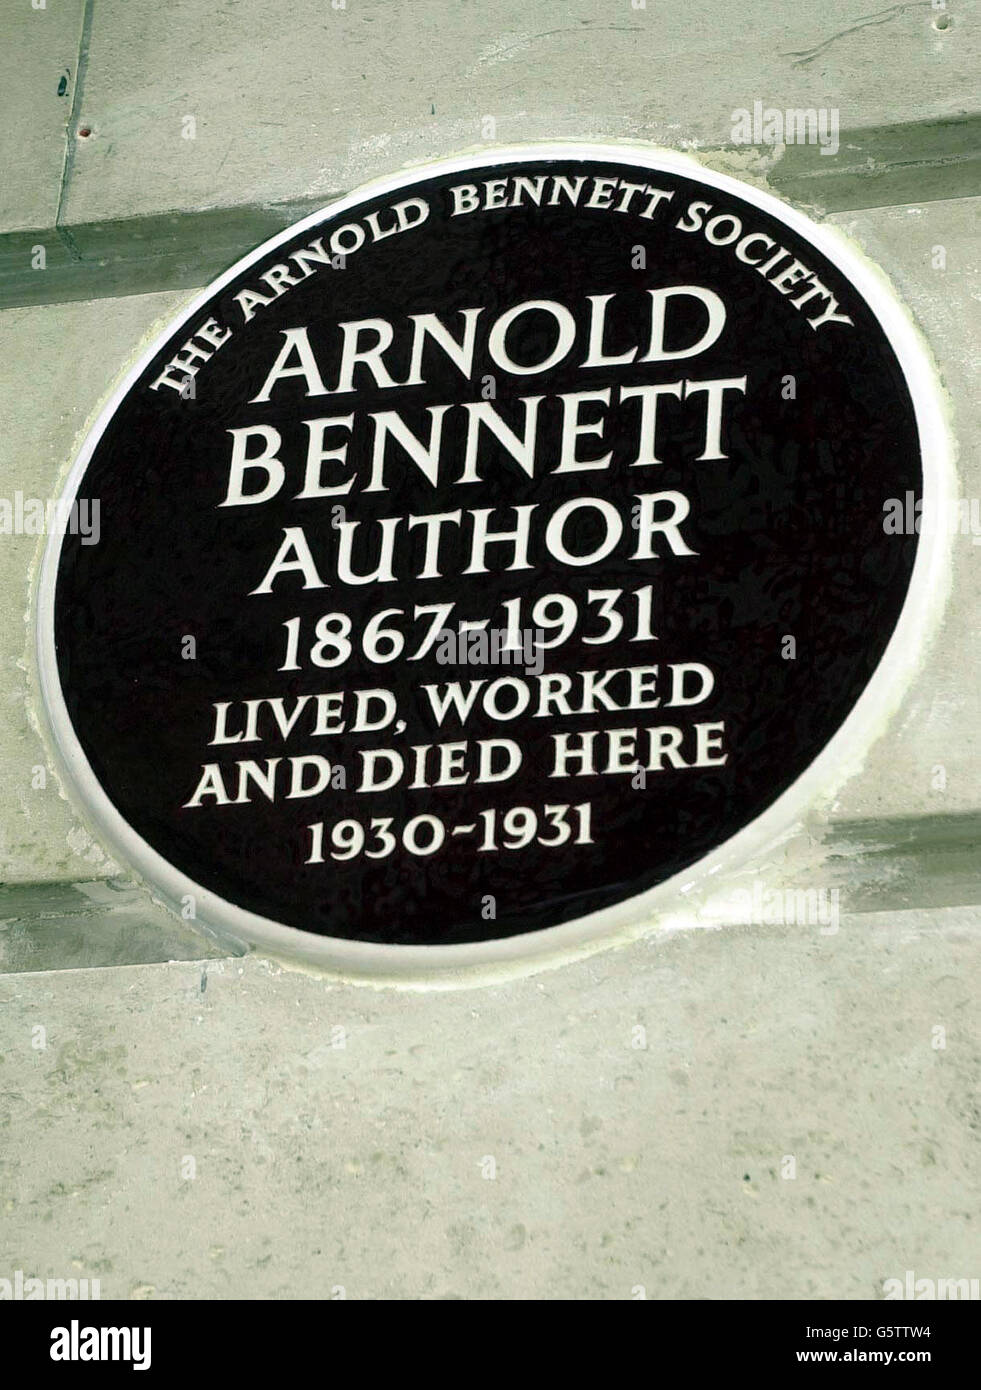 L'entrée principale des appartements résidentiels de Chiltern court dans Baker Street, où aujourd'hui une plaque murale a été dévoilée à Arnold Bennett (1867-1931) l'écrivain qui a vécu dans les appartements pendant plusieurs années, jusqu'à sa mort Banque D'Images